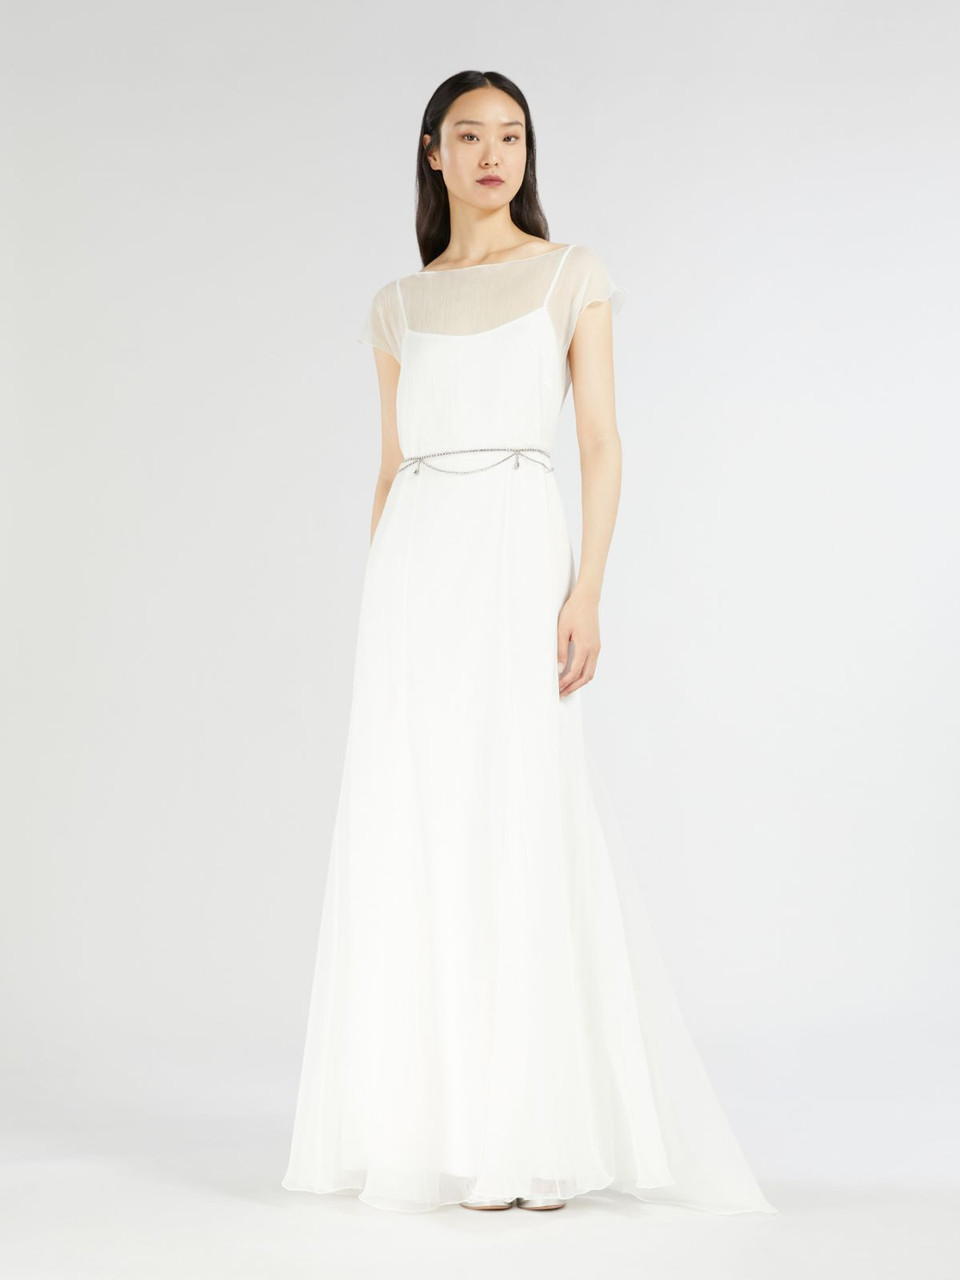 Max Mara Bridal and Wedding Dress Collection | Max Mara